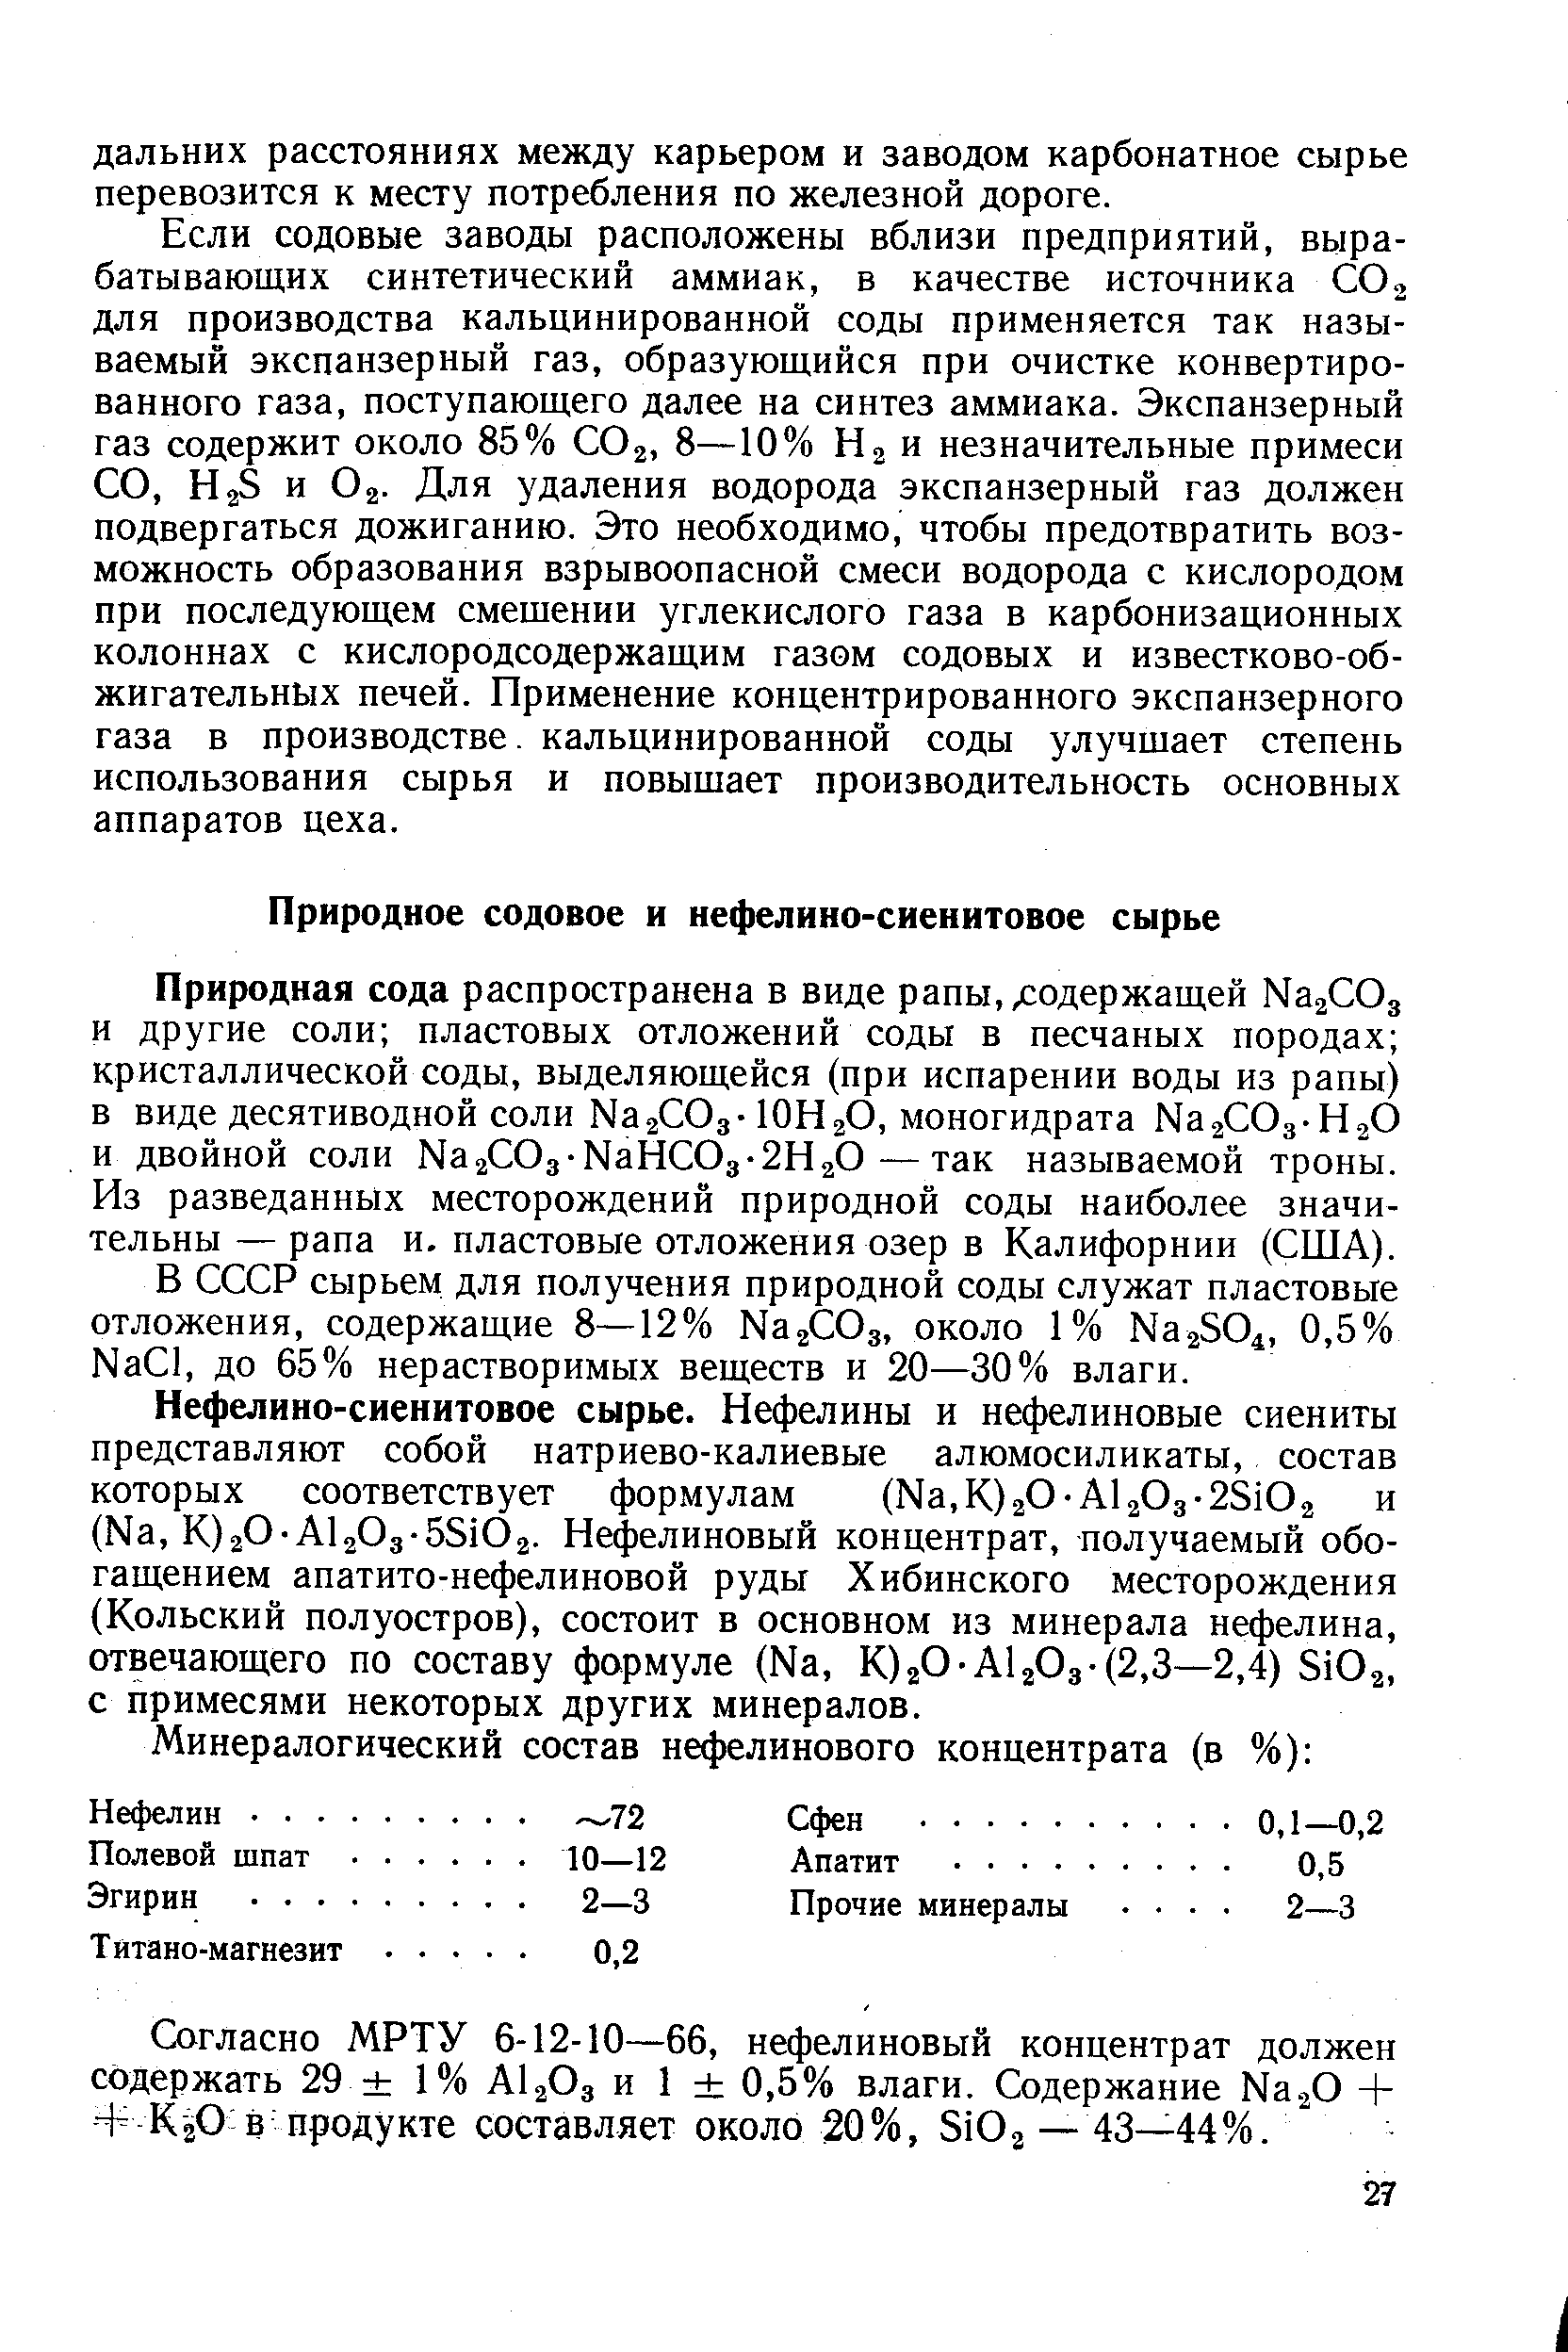 В СССР сырьем для получения природной соды служат пластовые отложения, содержащие 8—12% Naj Oa, около 1% NaaSOi, 0,5% Na l, до 65% нерастворимых веществ и 20—30% влаги.